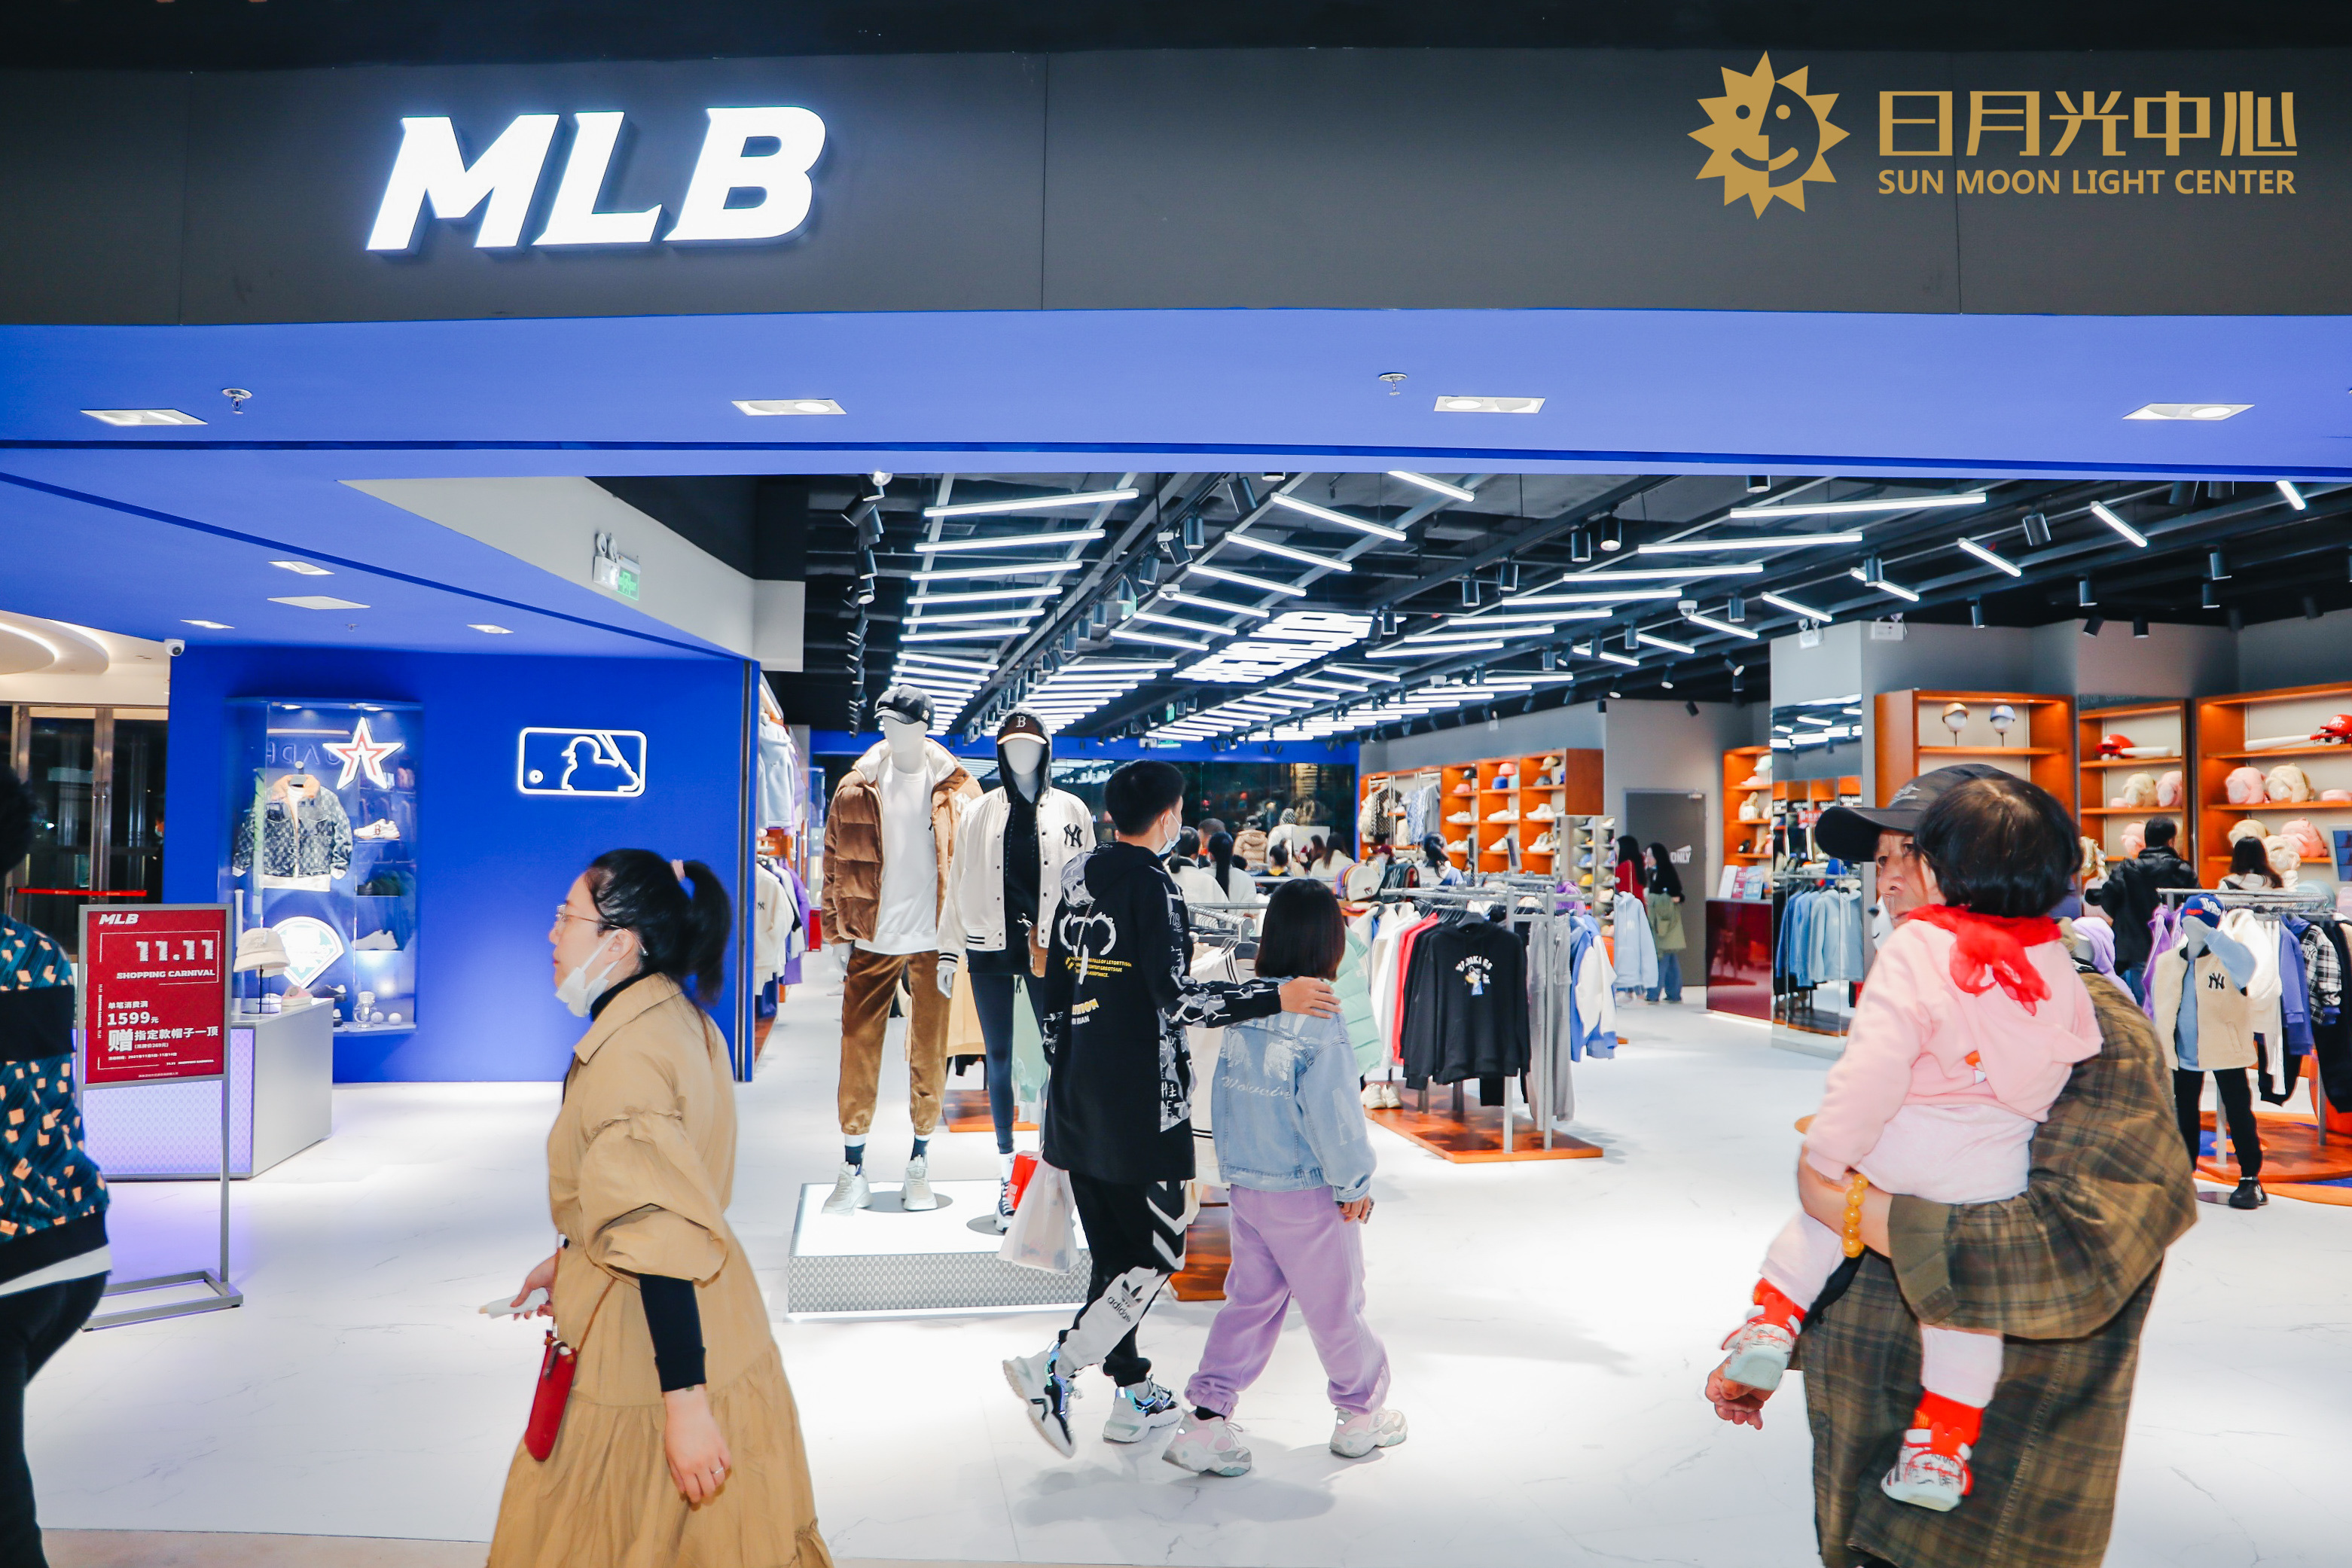 潮流品牌mlb虽然已拥有多家店铺,但此次开设在这里的,却属于其s级门店